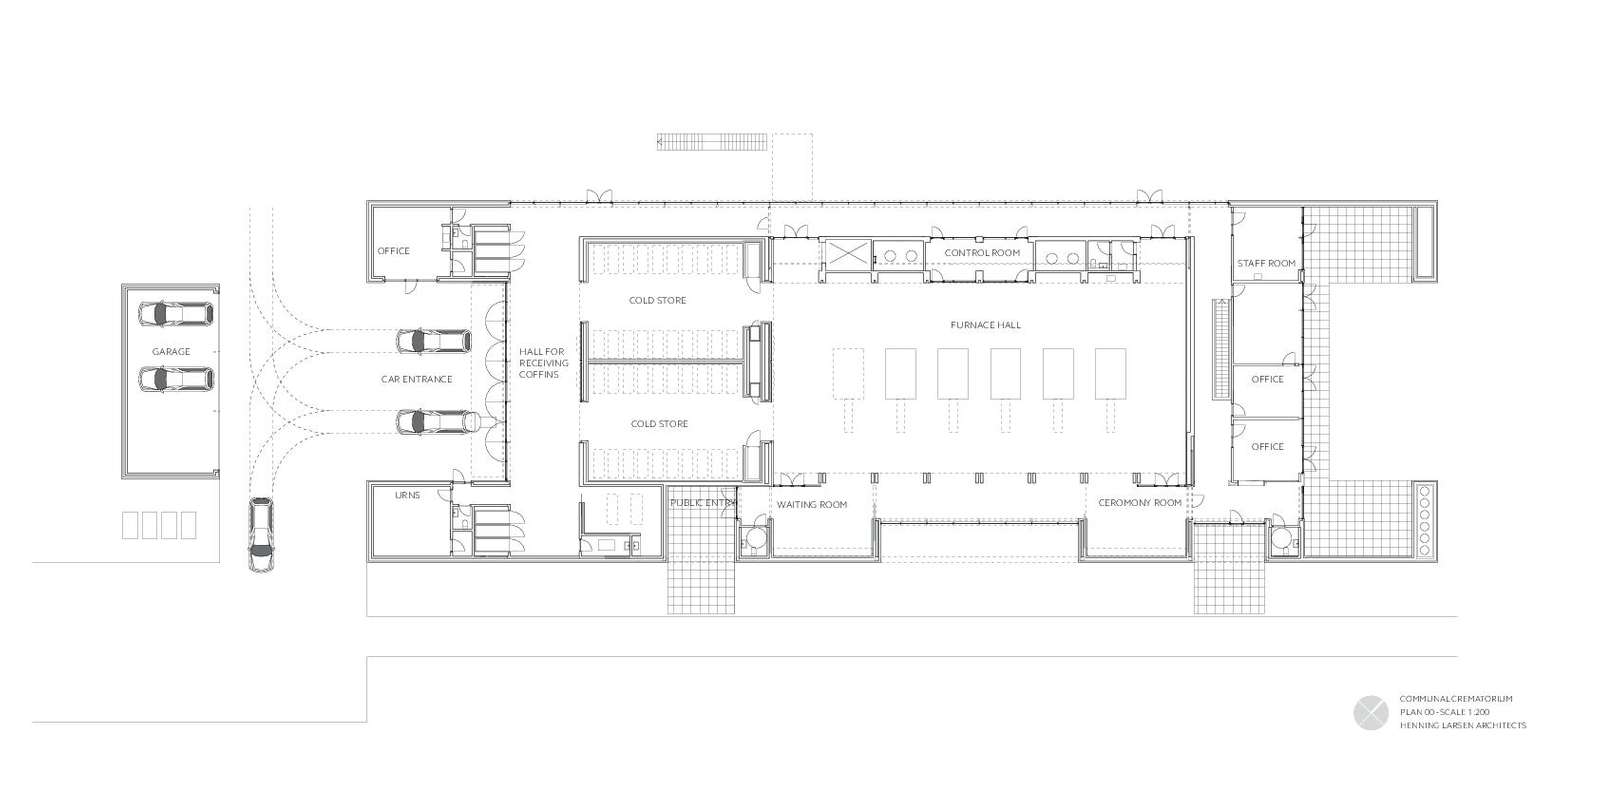 Ringsted Crematorium_Henning Larsen_Plan_1-200.pdf